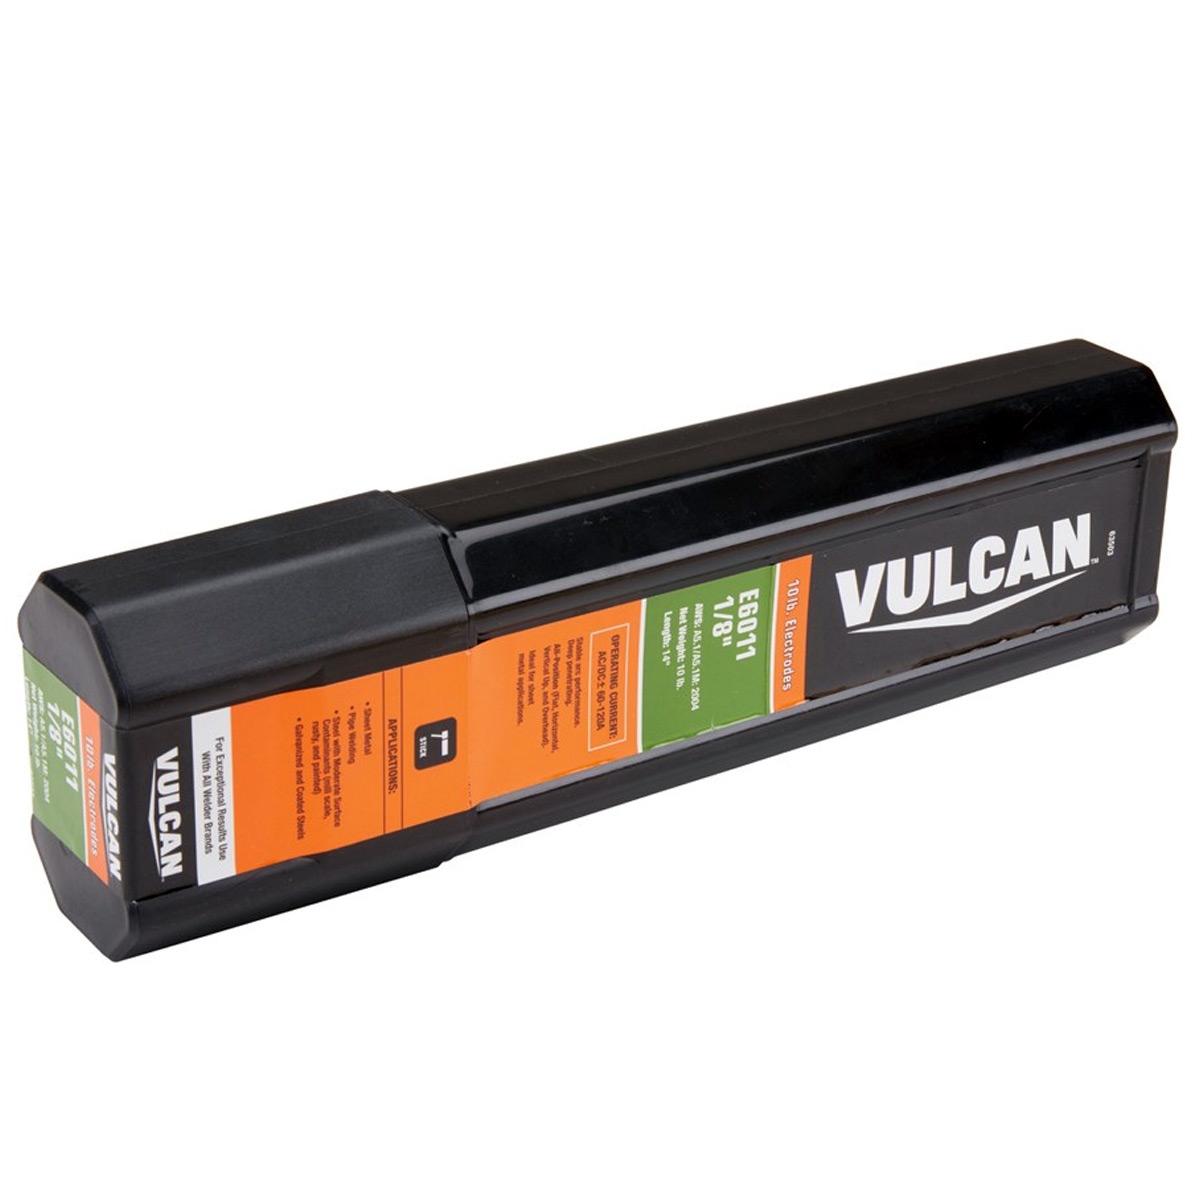 VULCAN 1/8 in. AWS E6011 Welding Electrode 10.00 lb. - Item 63503